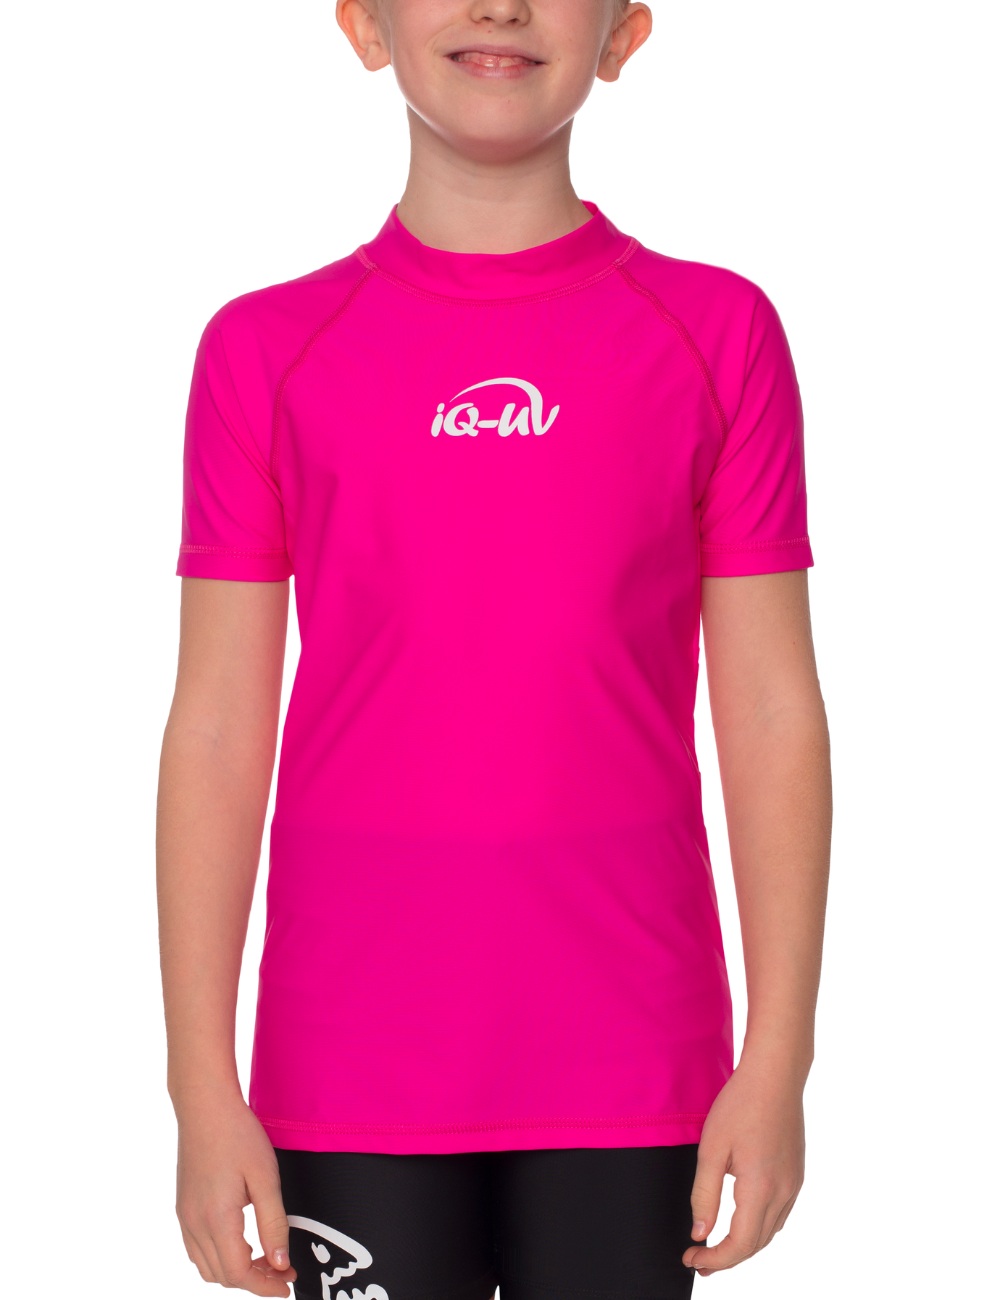 Shirt für Kinder pink